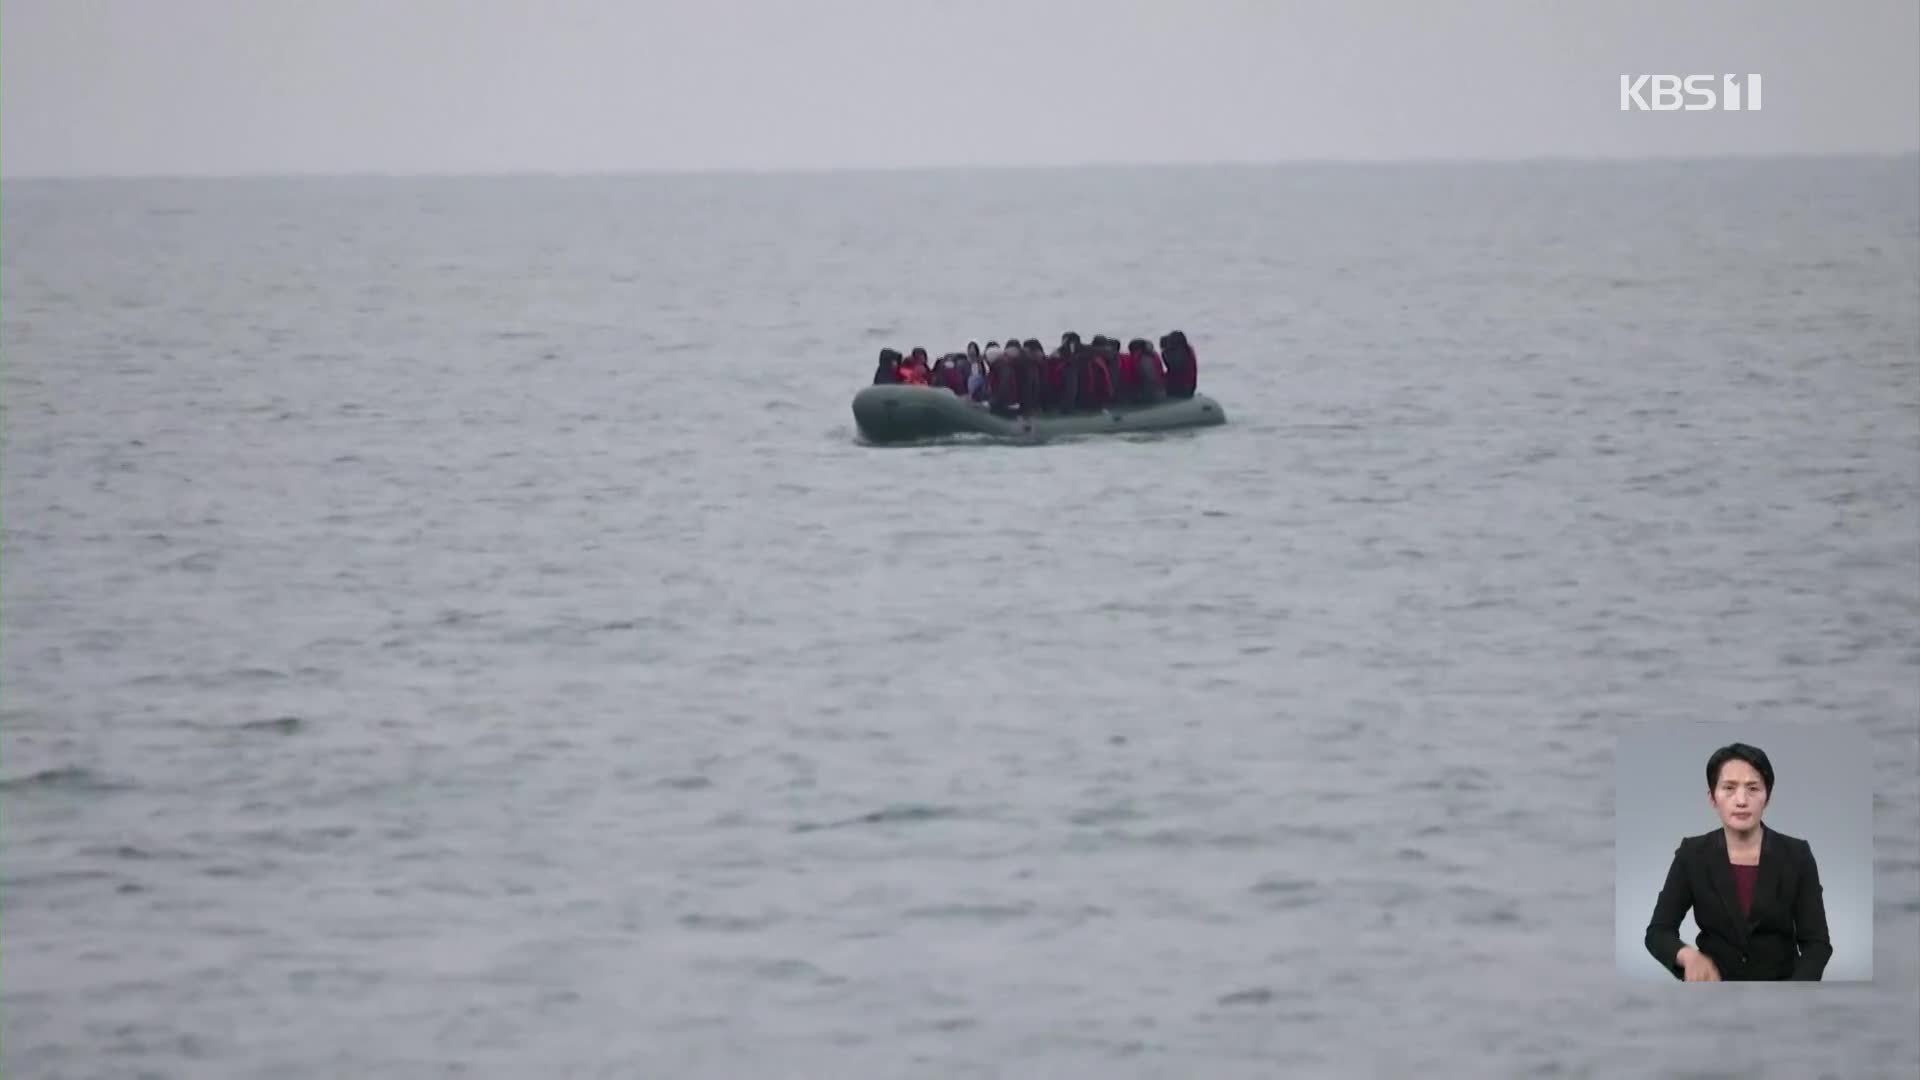 영불해협 건너던 난민 보트 전복…“30여 명 사망”